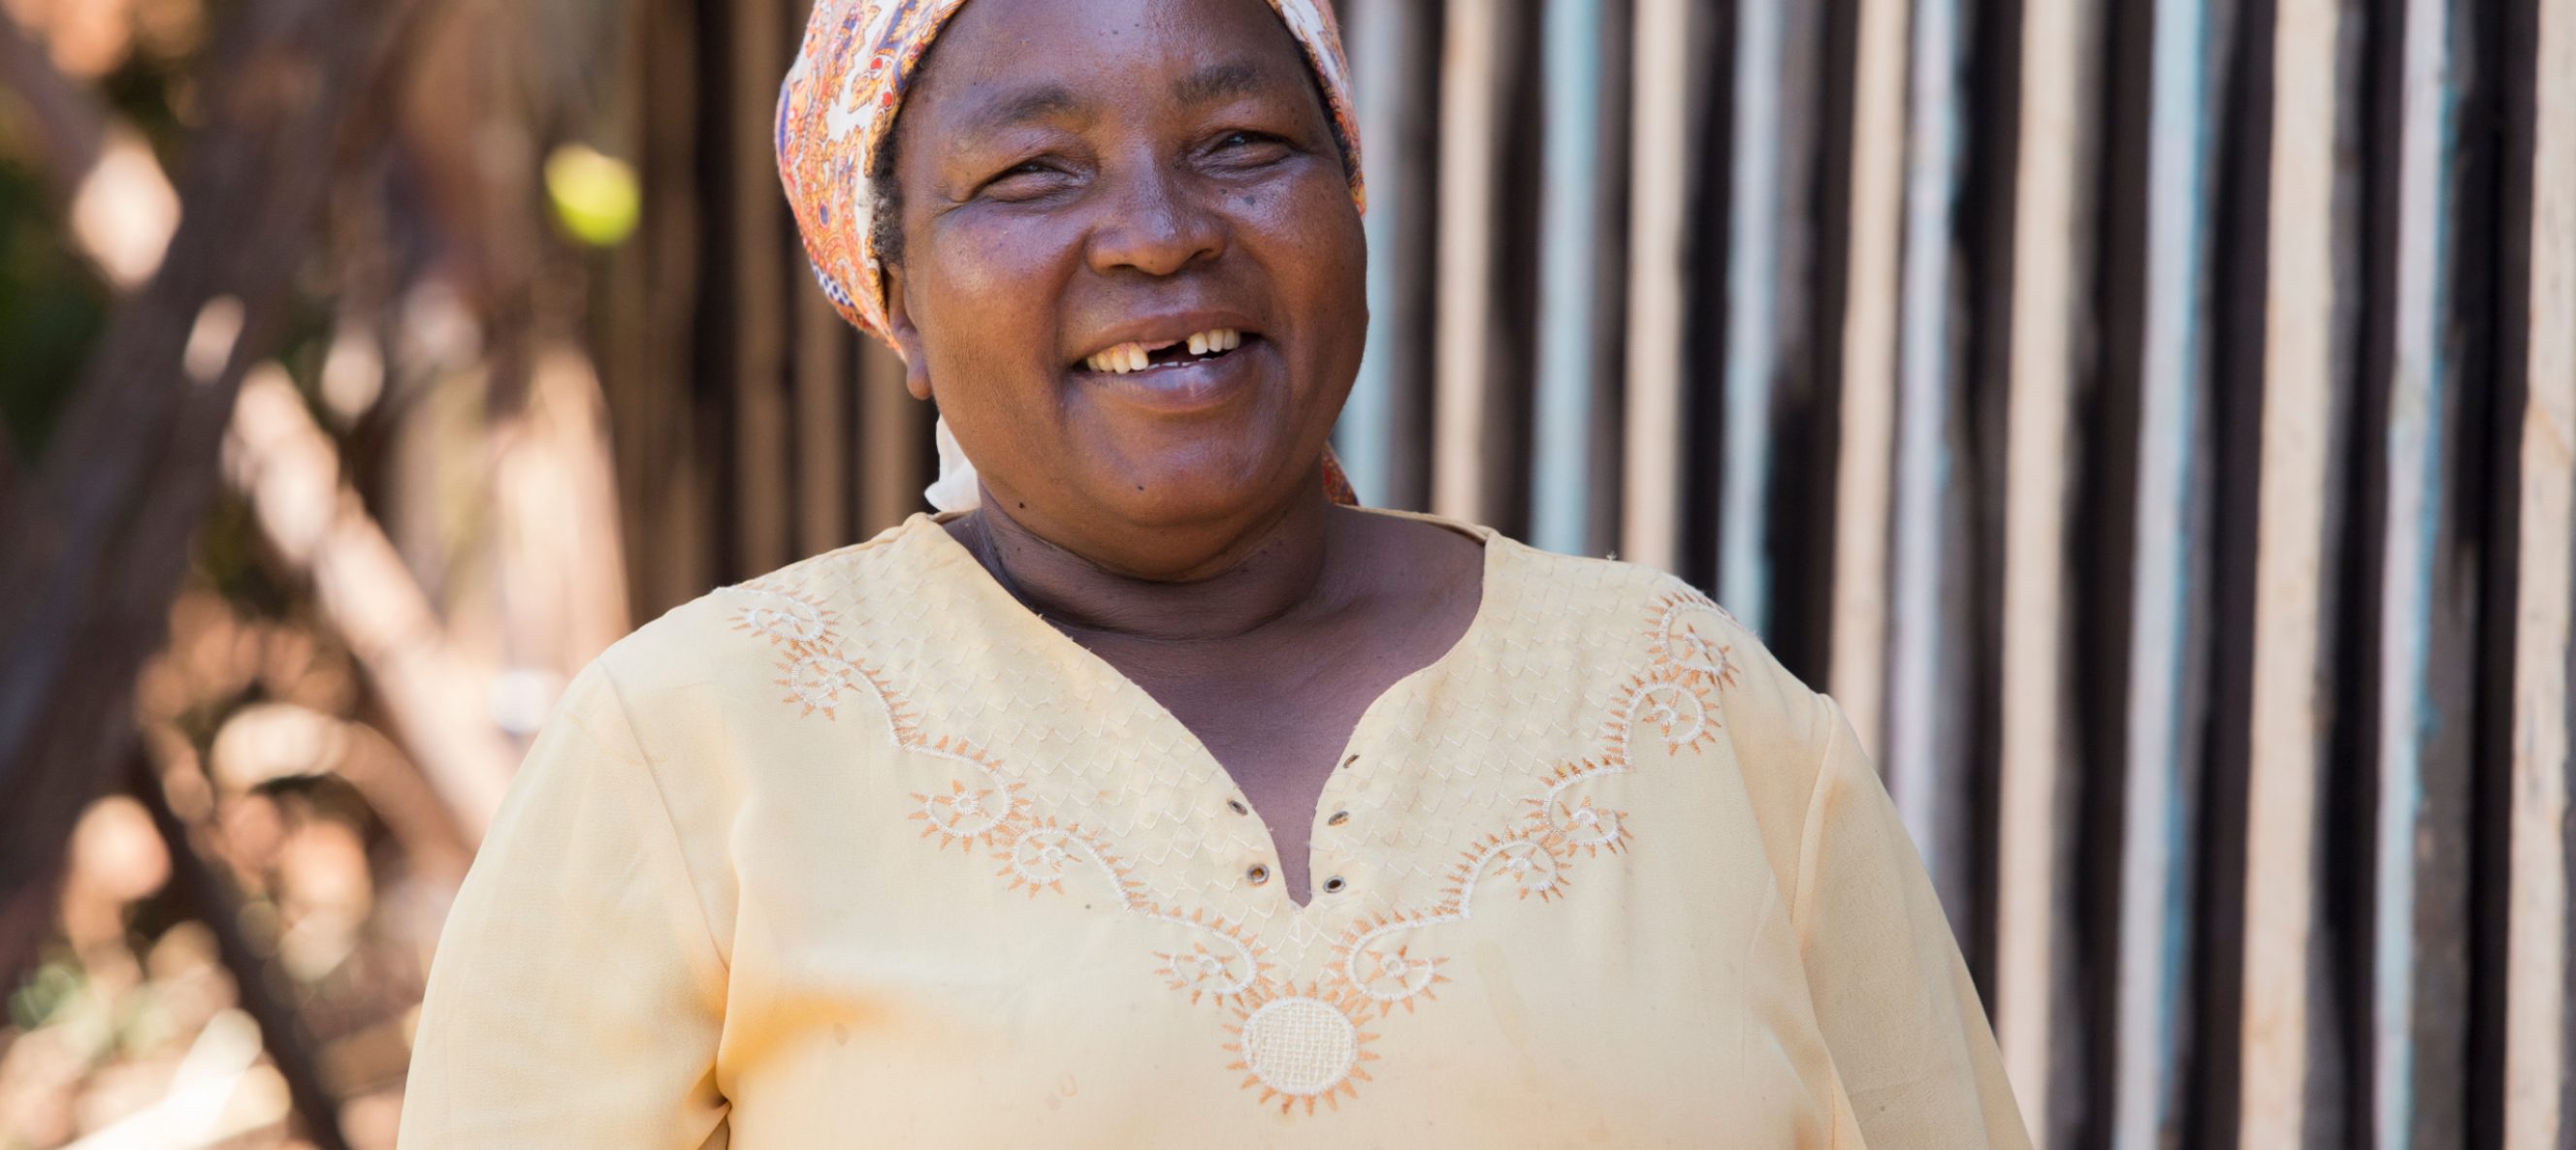 L'agricultrice biologique Josephine Ithuru, de Chuka (Kenya), participe au projet "comparaison entre bio et conventionnel". Elle mesure les intrants et les récoltes des deux méthodes.